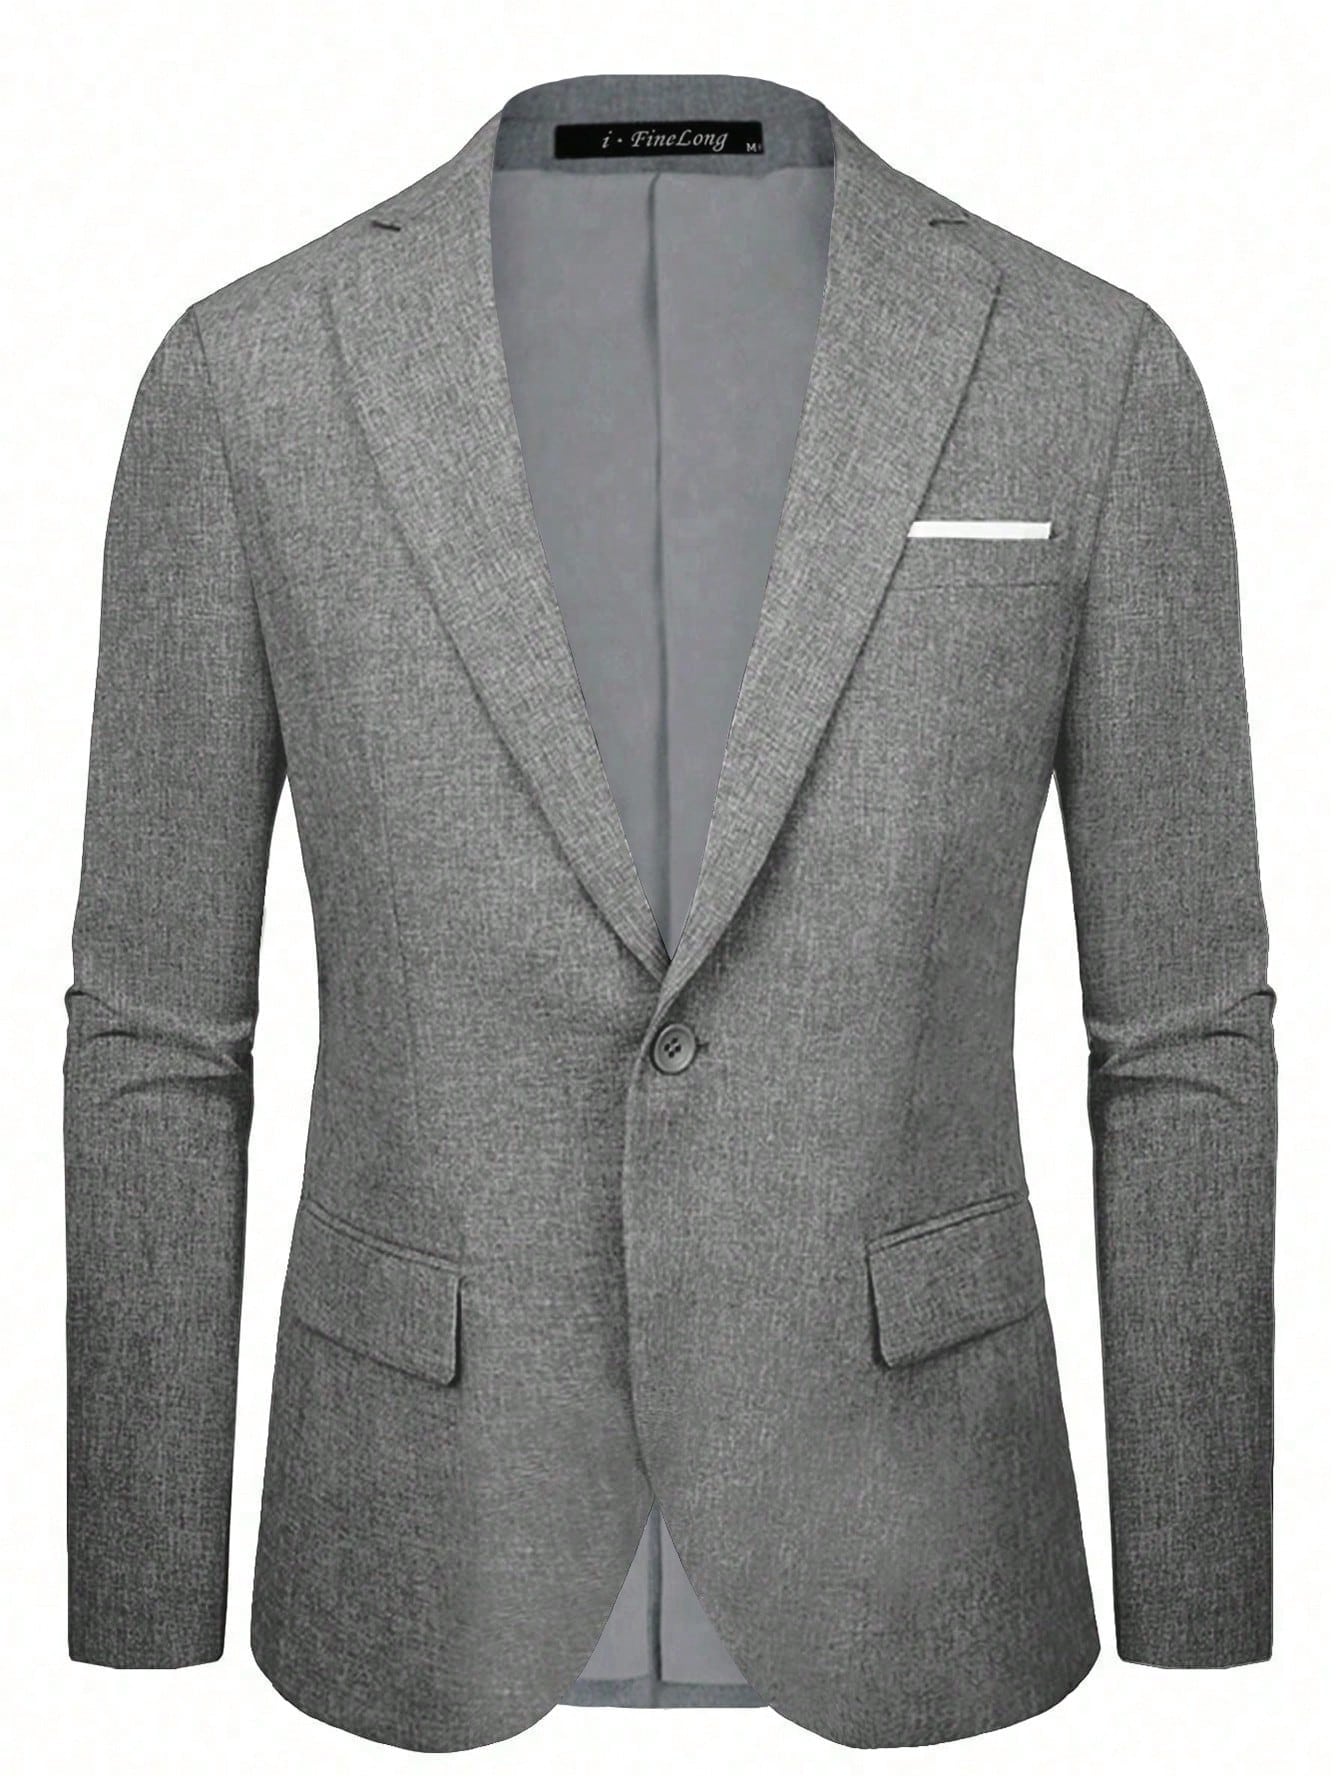 Мужской пиджак на одной пуговице, серый